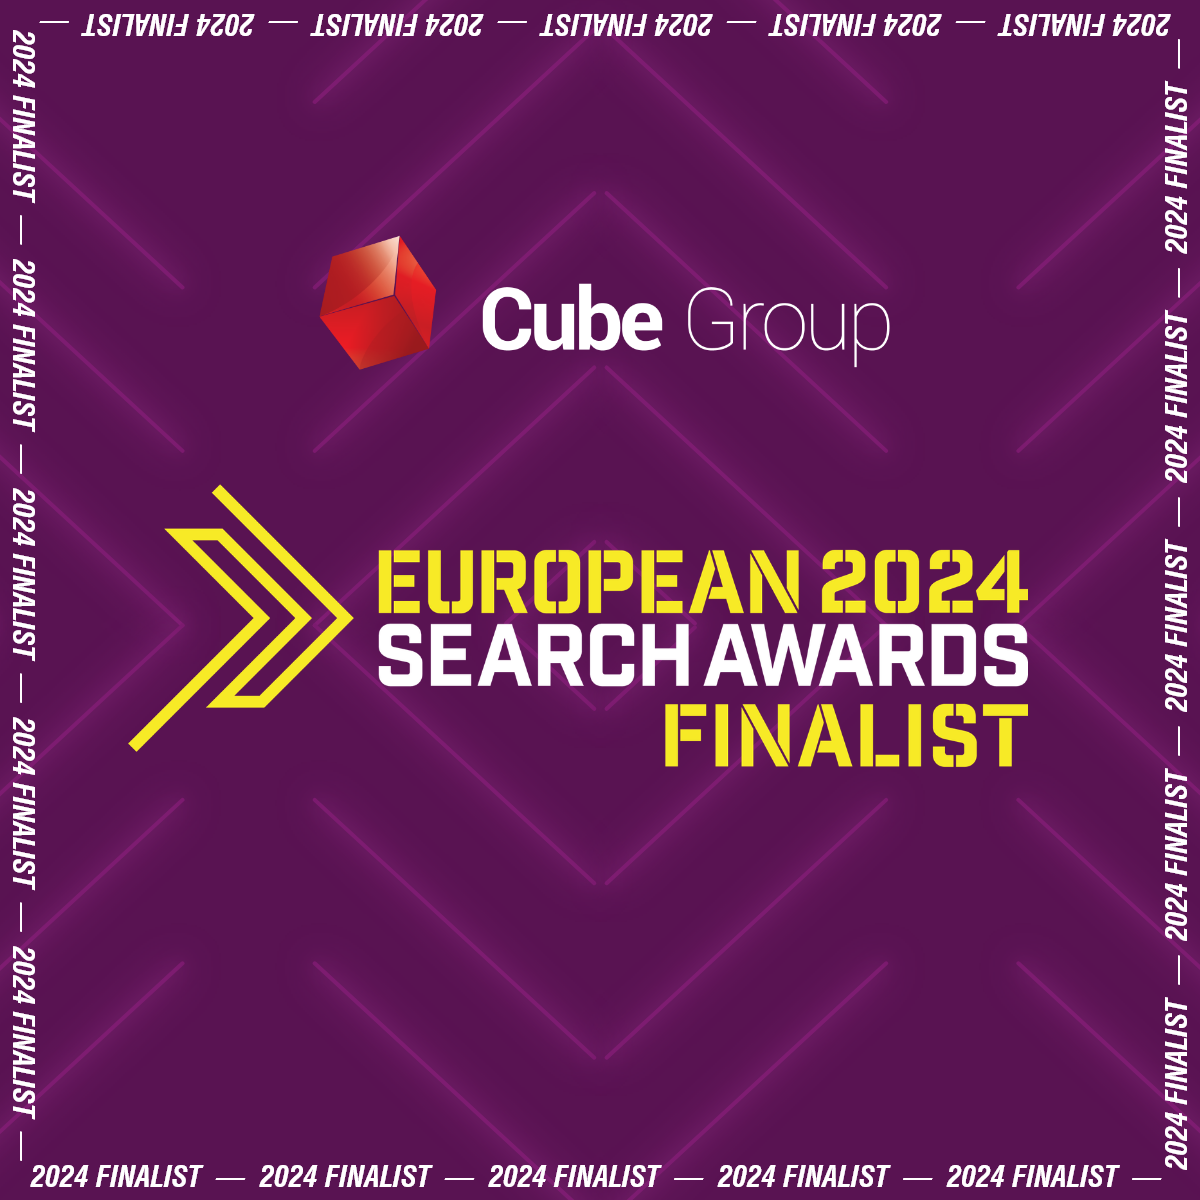 100% skuteczności w European Search Awards 2024